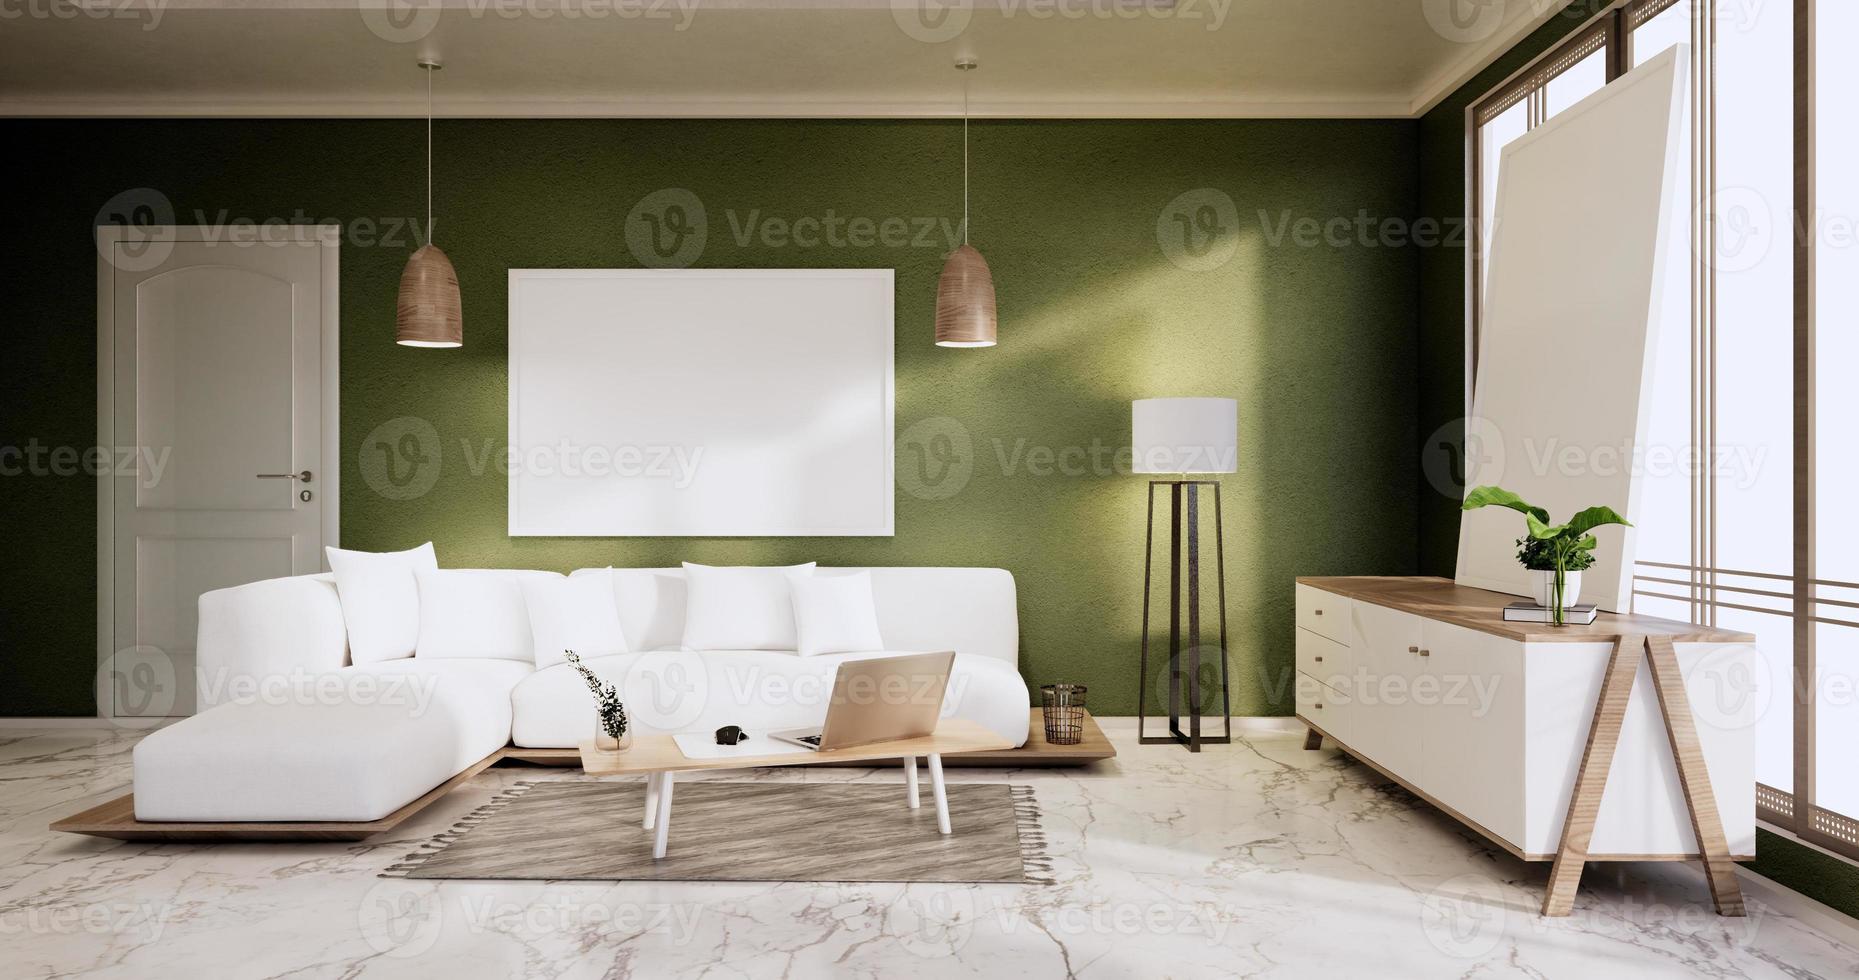 gabinete em estilo zen moderno quarto vazio, designs minimalistas. Renderização 3d foto